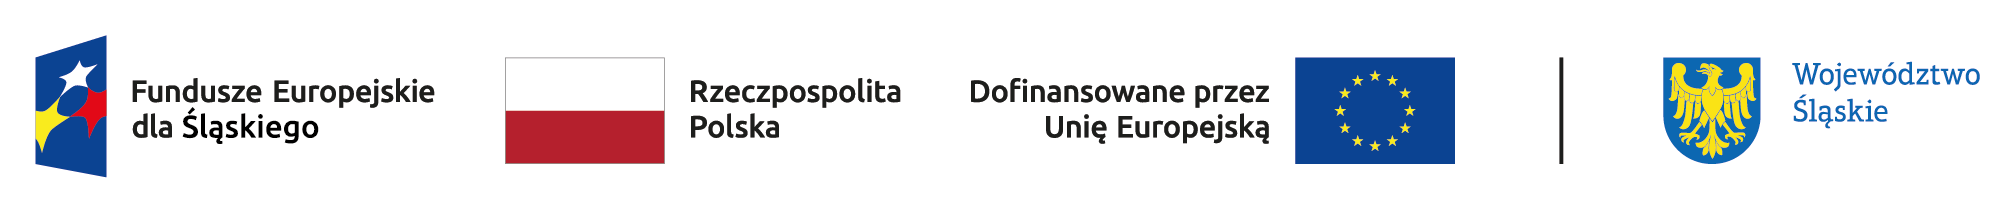 Logotypy programu Fundusze Europejskie dla Śląskiego: od lewej symbol Funduszy Europejskich, flaga Rzeczypospolitej Polski, flaga Unii Europejskiej i znak herbowy Województwa Śląskiego 